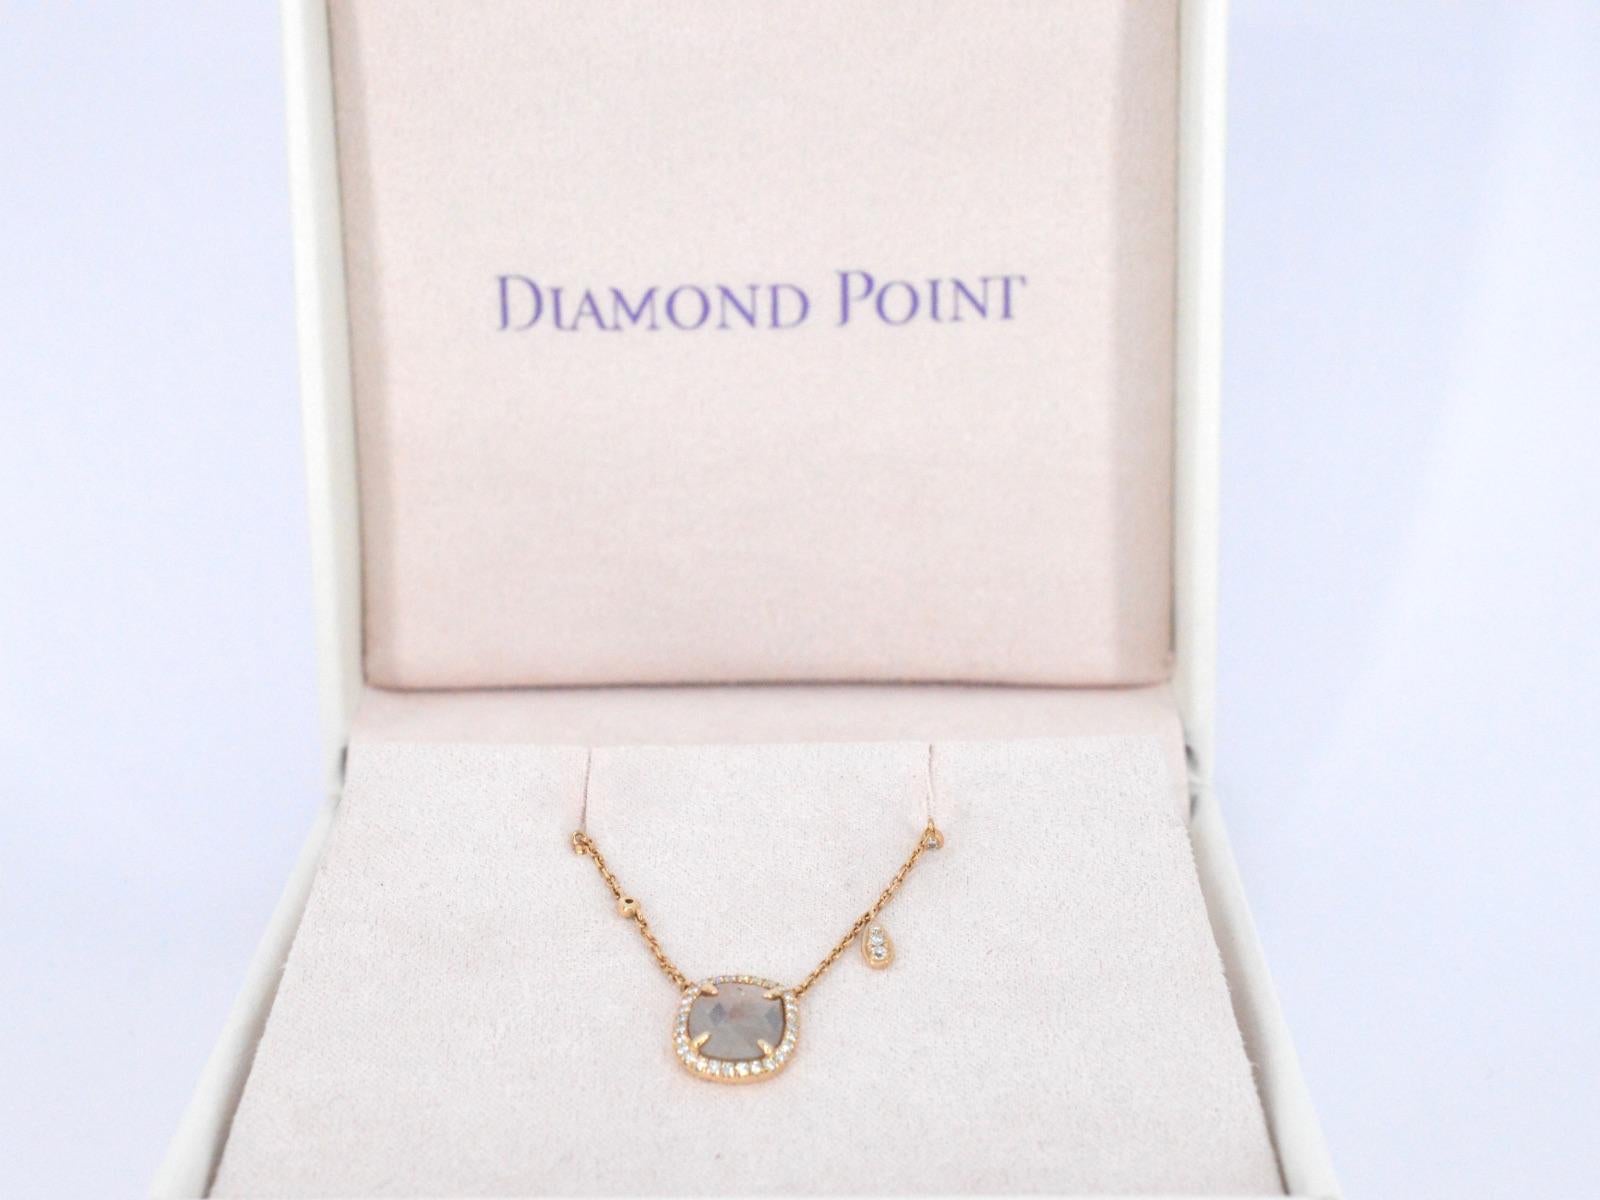 Laissez-vous séduire par l'allure captivante de ce collier Diamond Point, véritable témoignage de l'art de la haute joaillerie. La pièce maîtresse de ce bijou exquis est un diamant central brillant de 1,00 carat, méticuleusement facetté pour